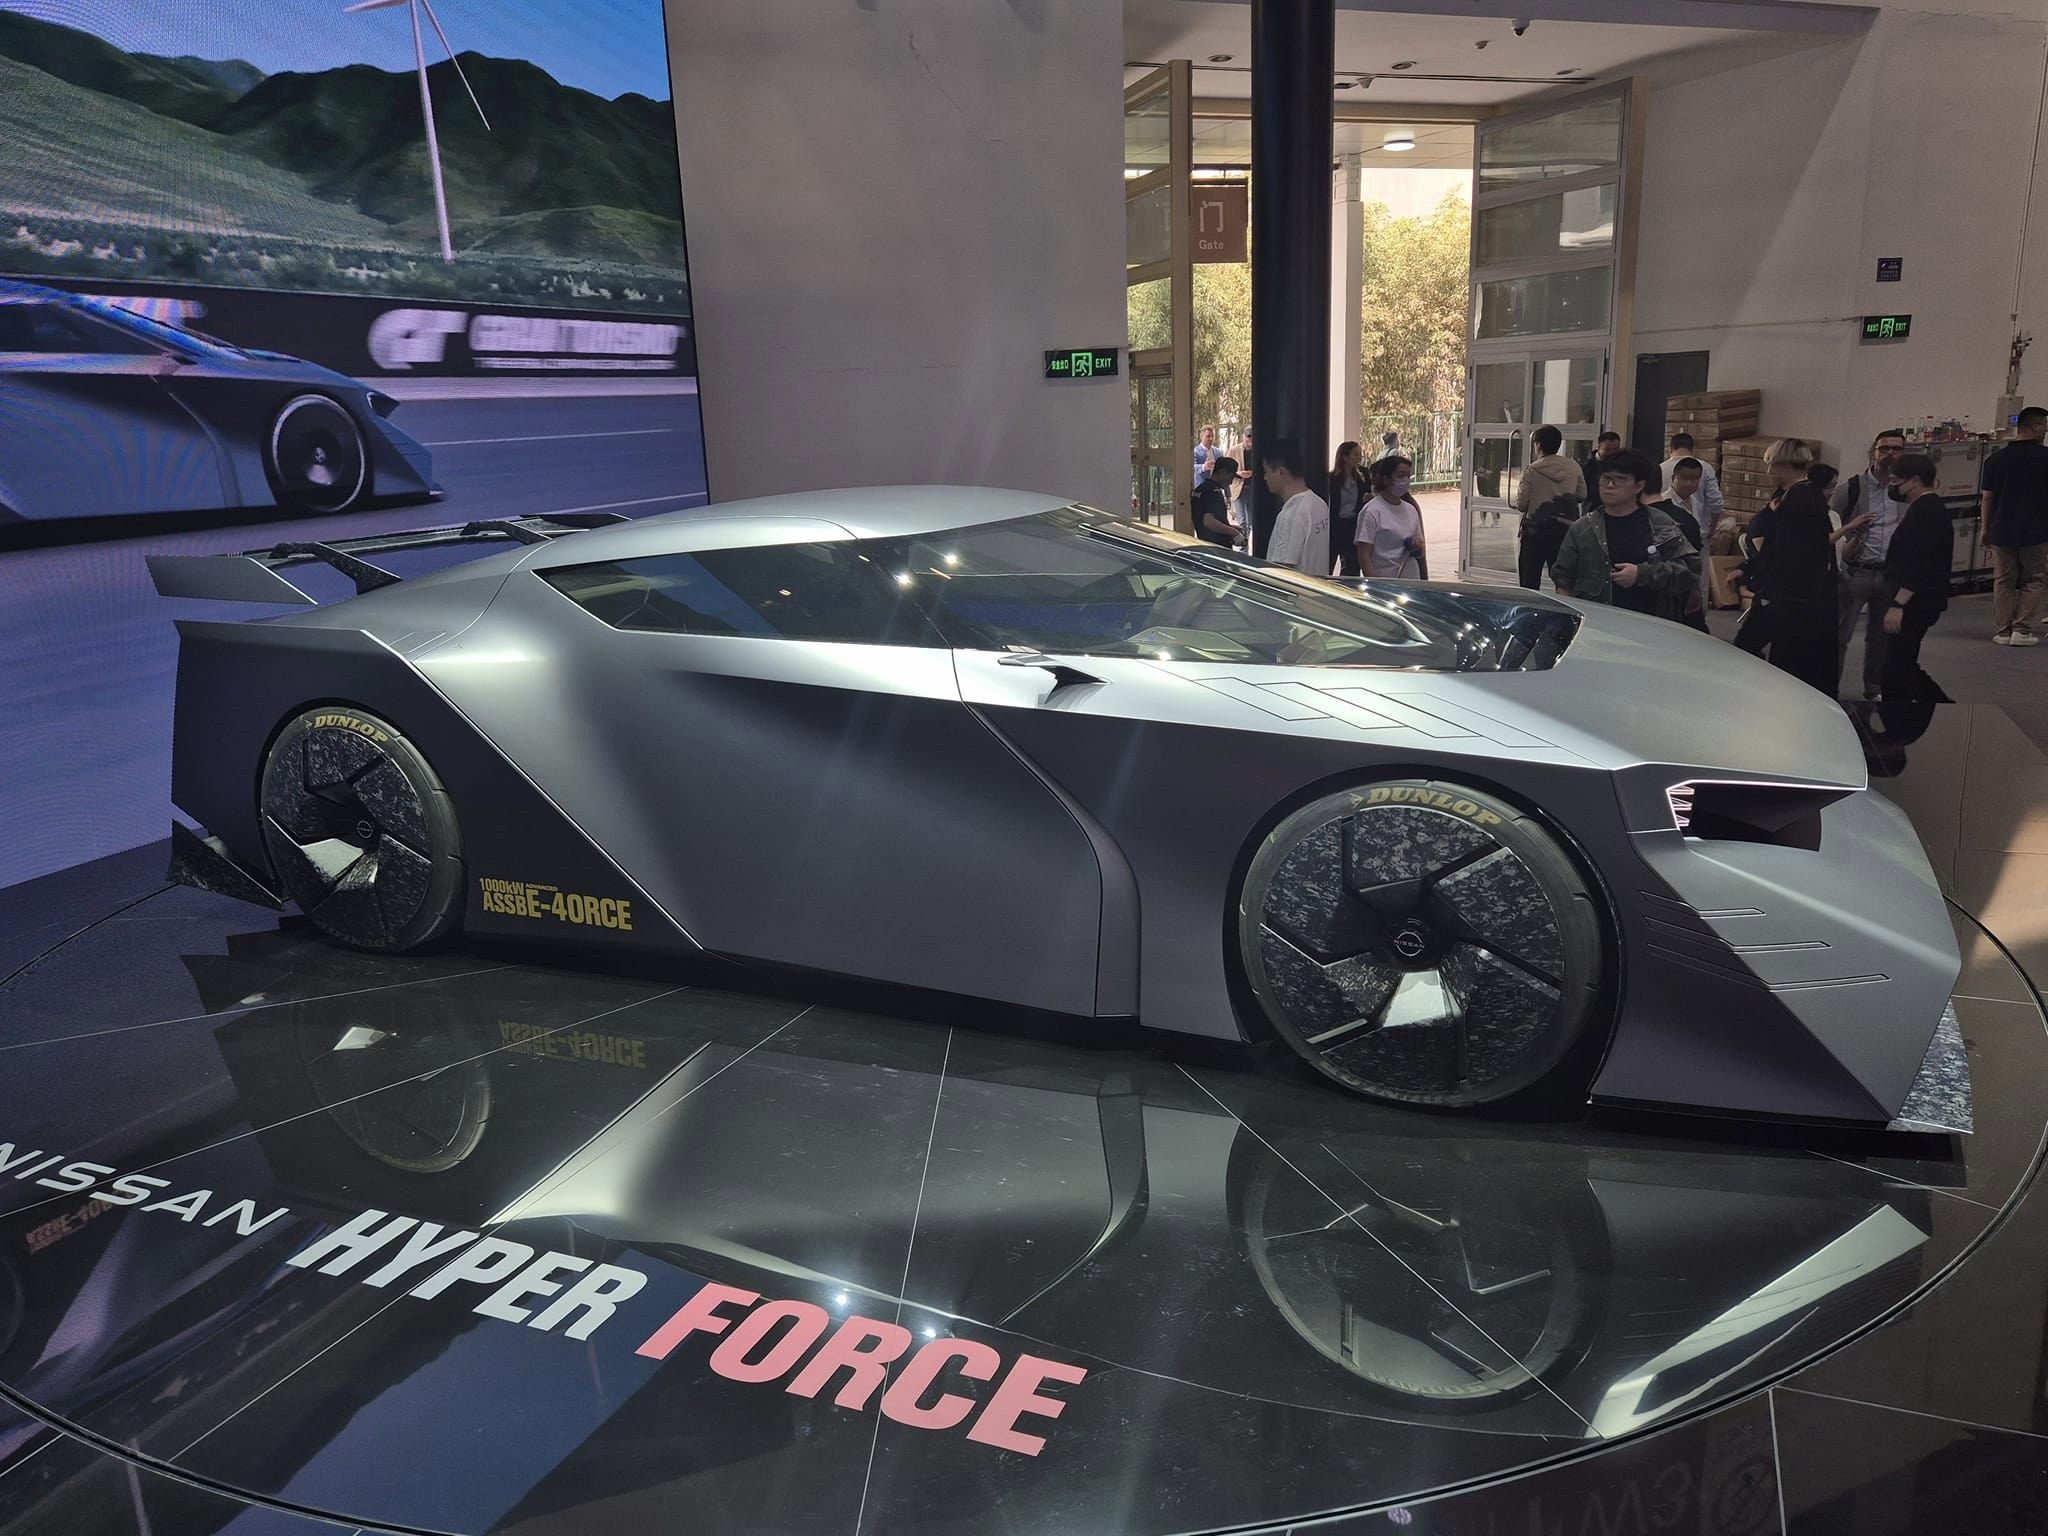 Cận cảnh Hyper Force - siêu xe điện có thiết kế lạ mắt của Nissan - ảnh 3